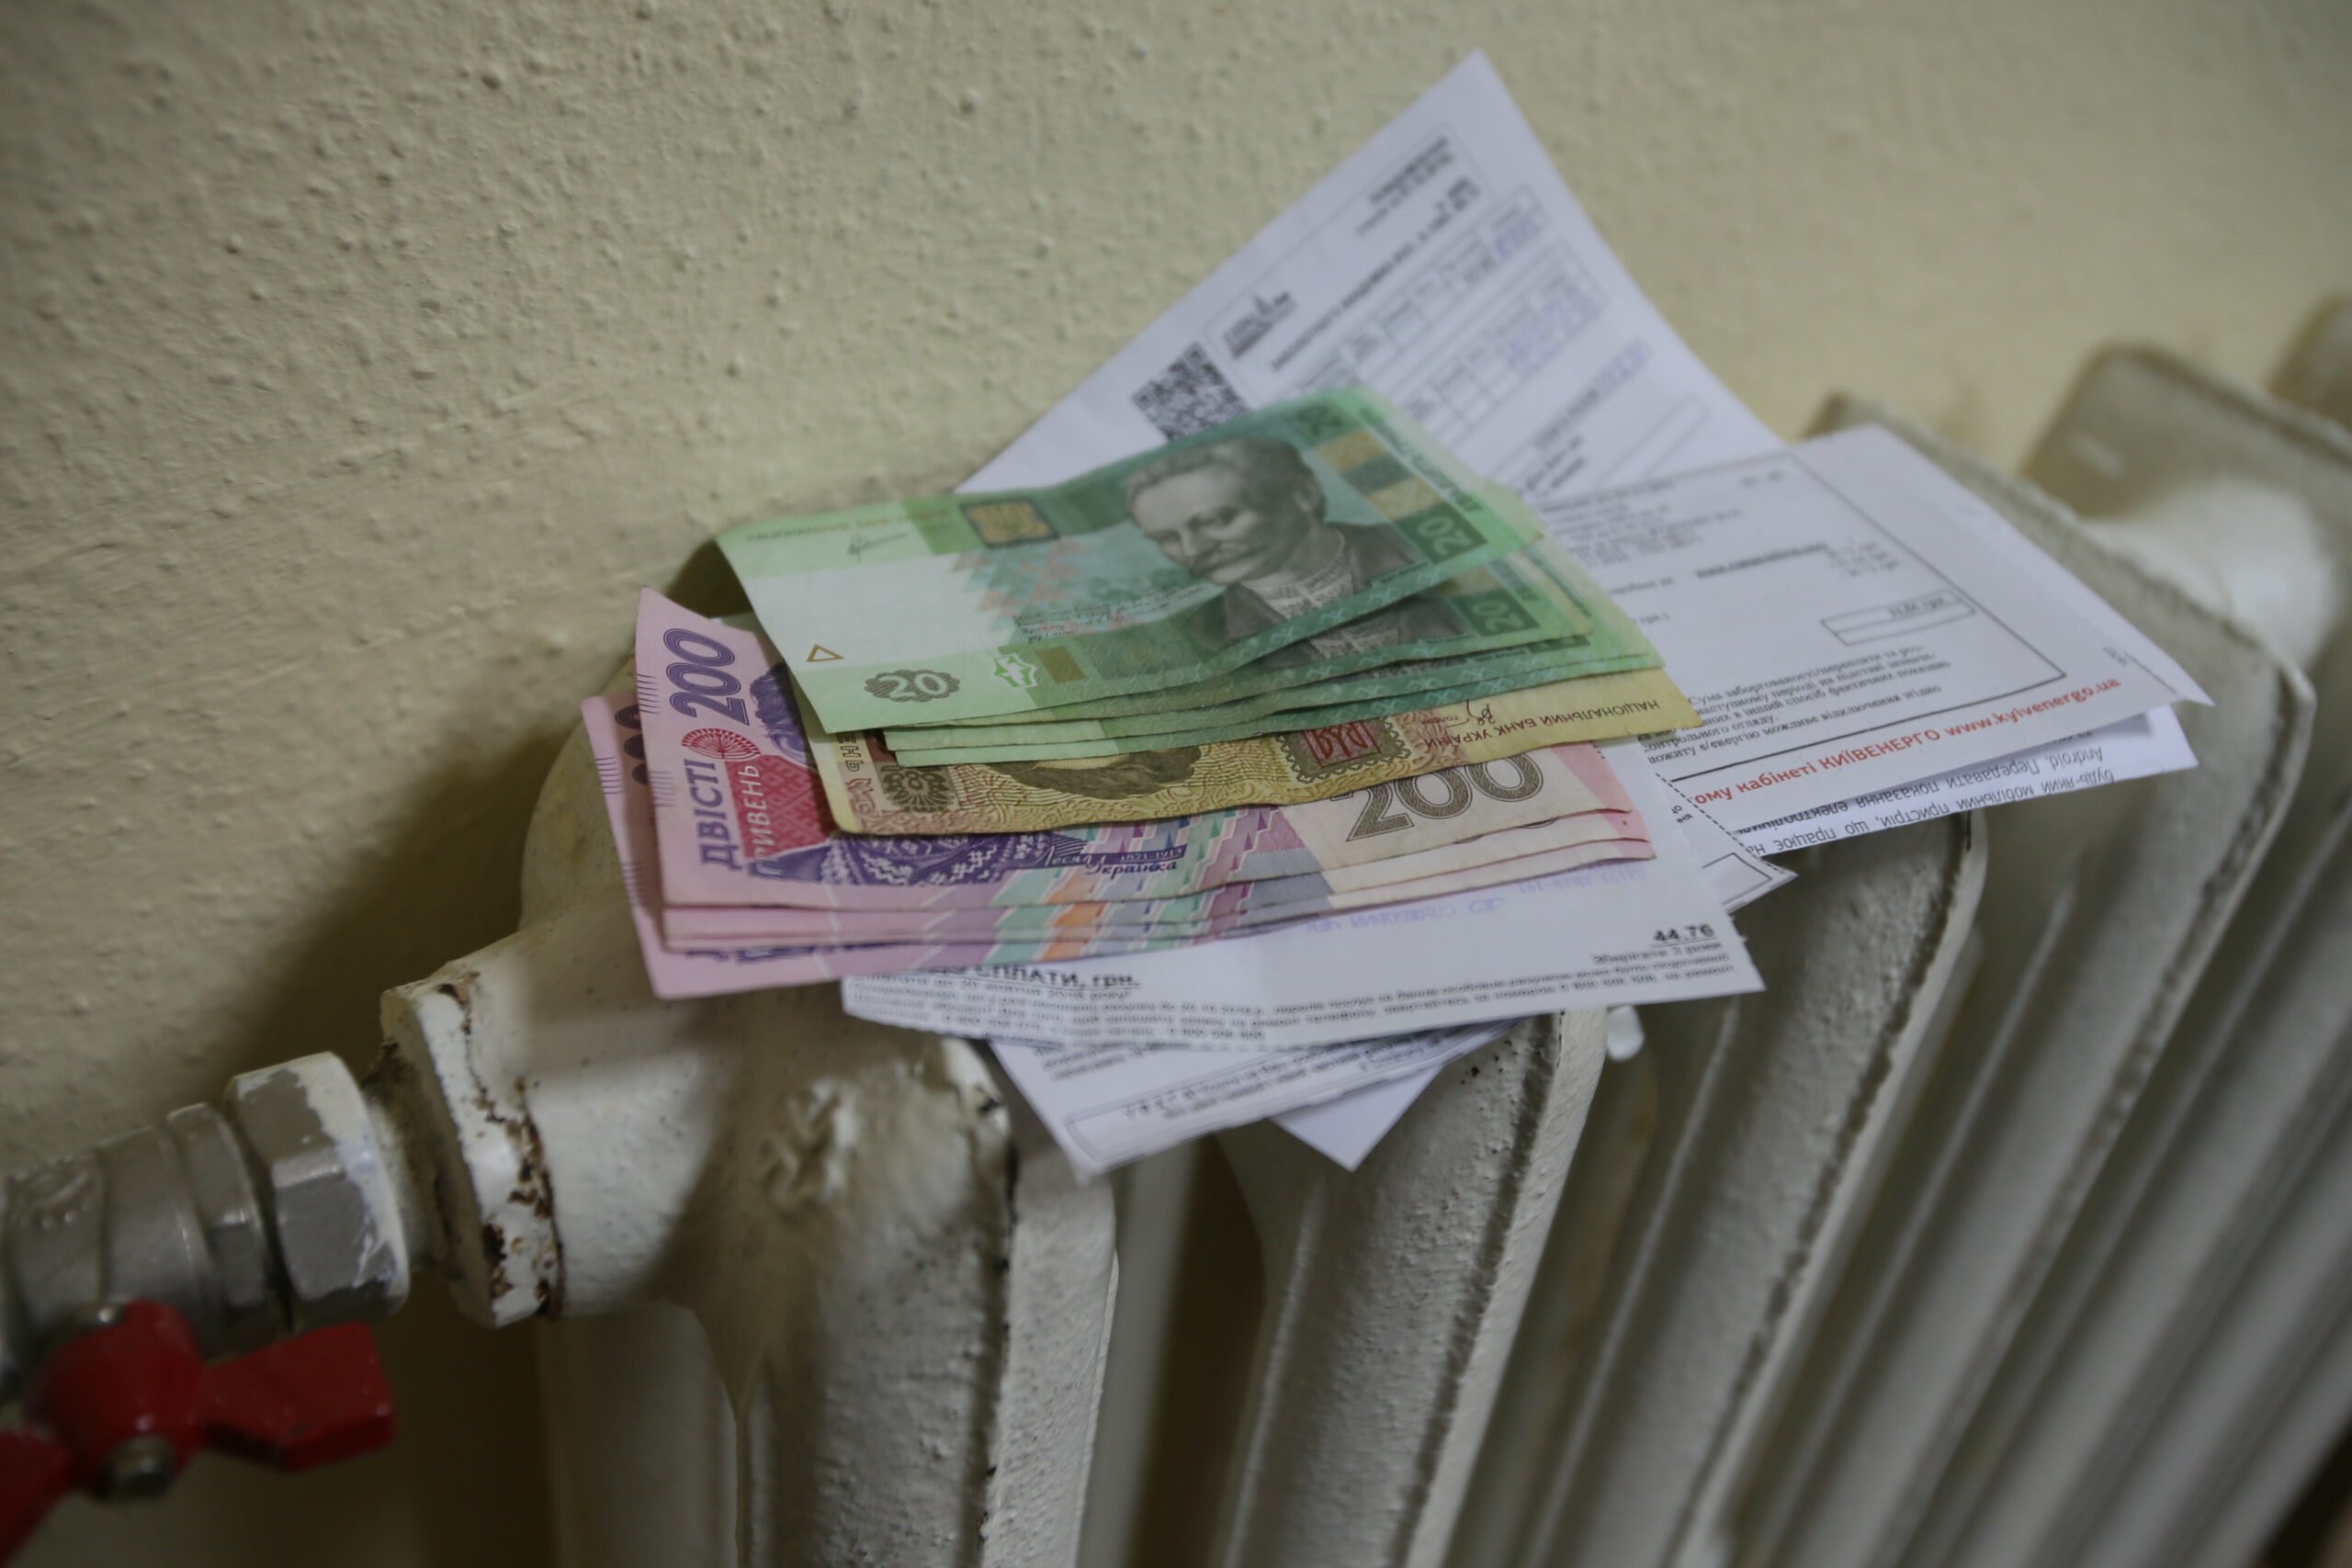 “Херсонтеплоэнерго” предлагает абонентам выплачивать долги частями